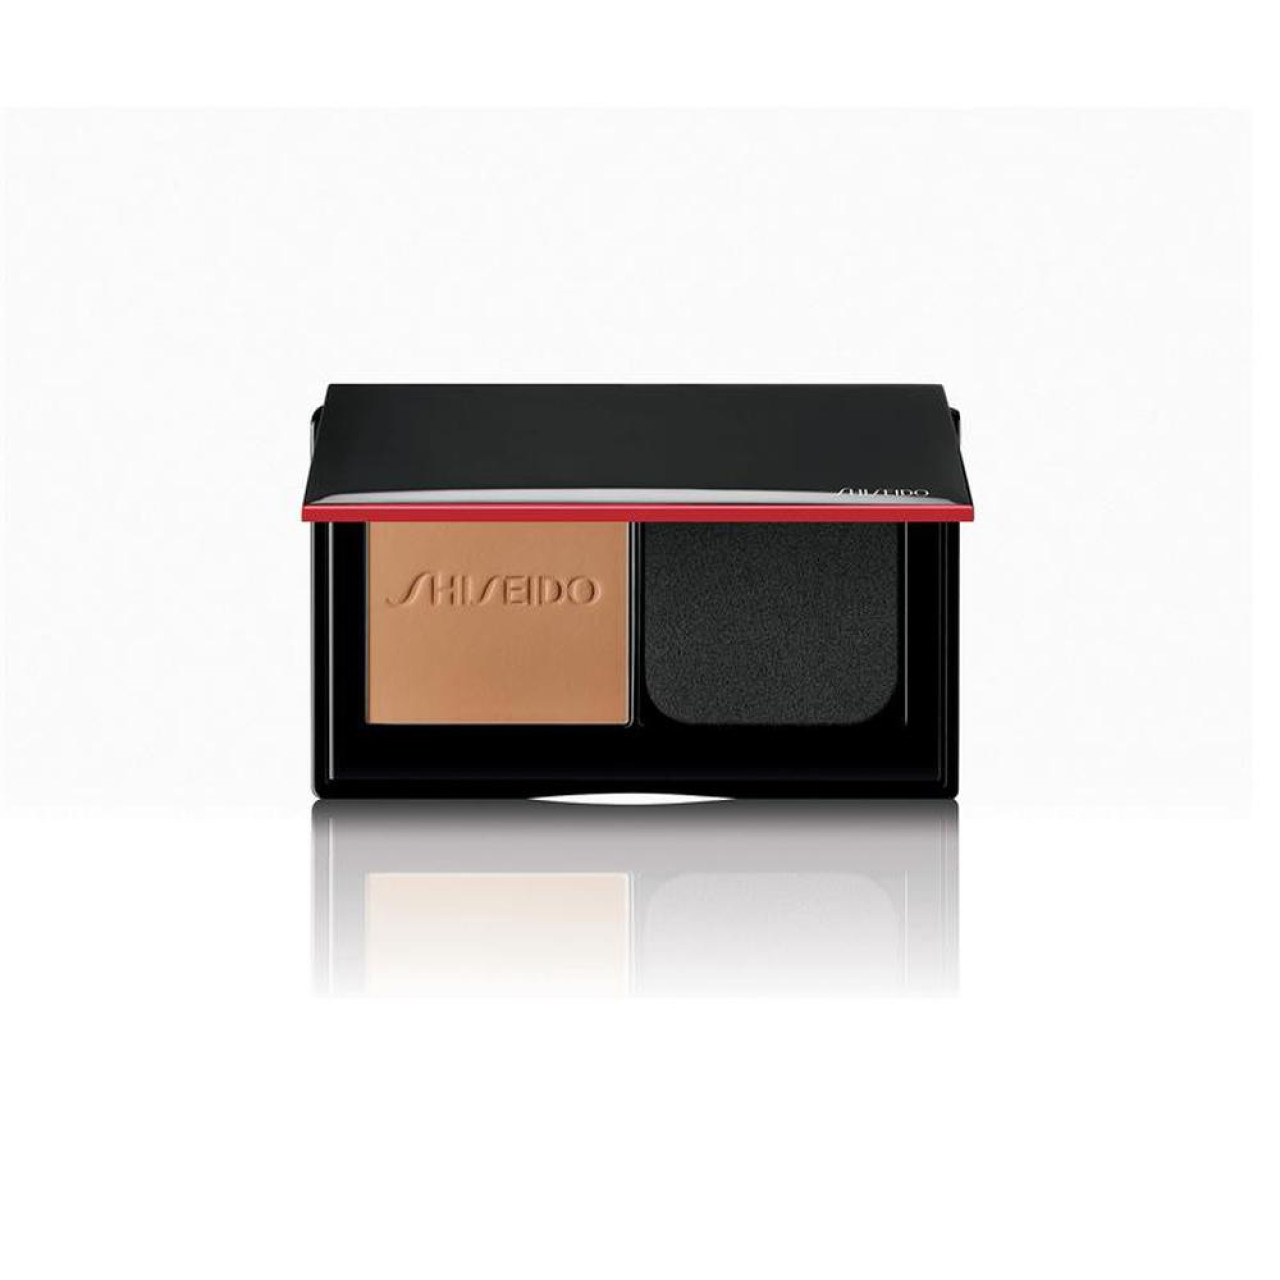 Shiseido synchro skin powder self-refreshing foundation 350